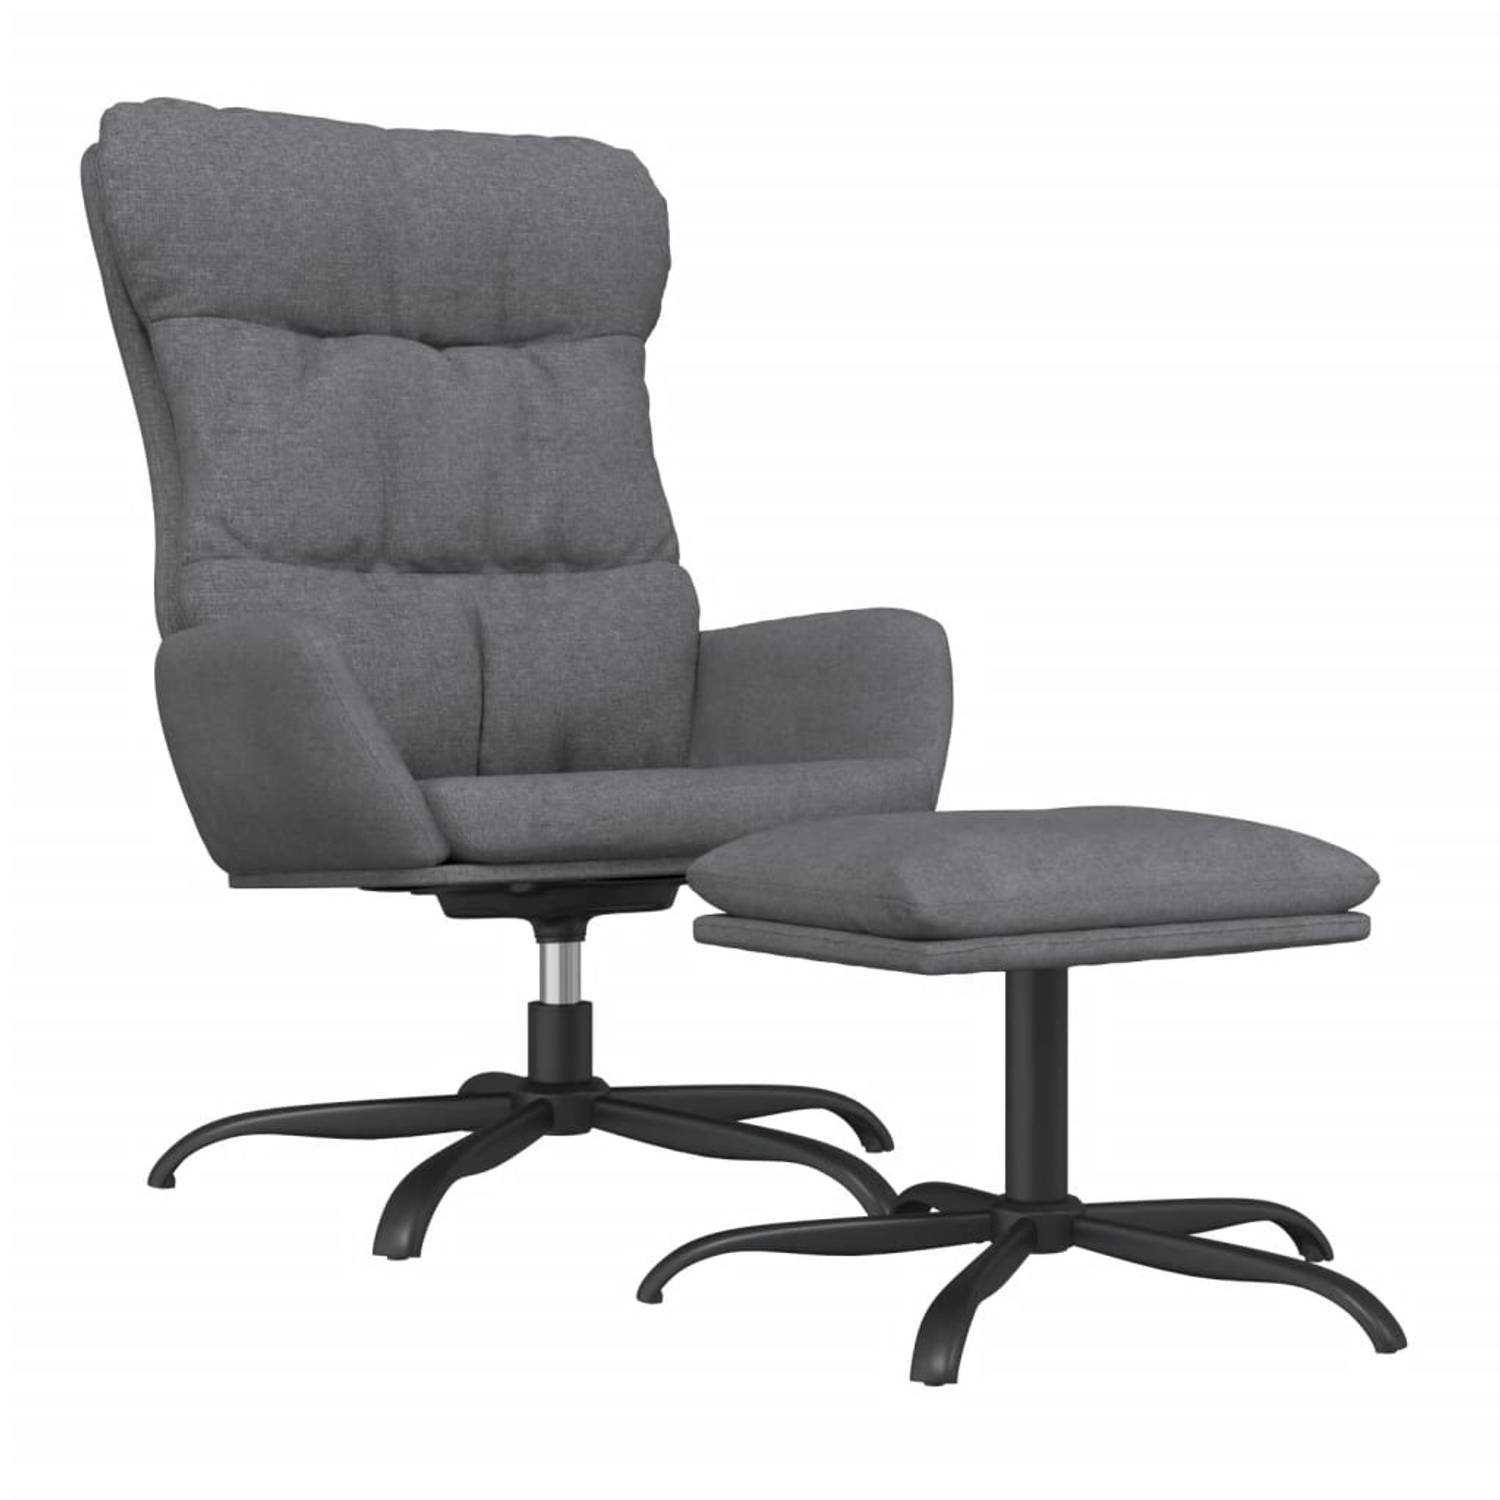 The Living Store Relaxstoel - Met voetenbank - Lichtgrijs - Stof - Metaal en multiplex - 70x77x98 cm - 360 graden draaibaar - 60x60x39 cm kruk